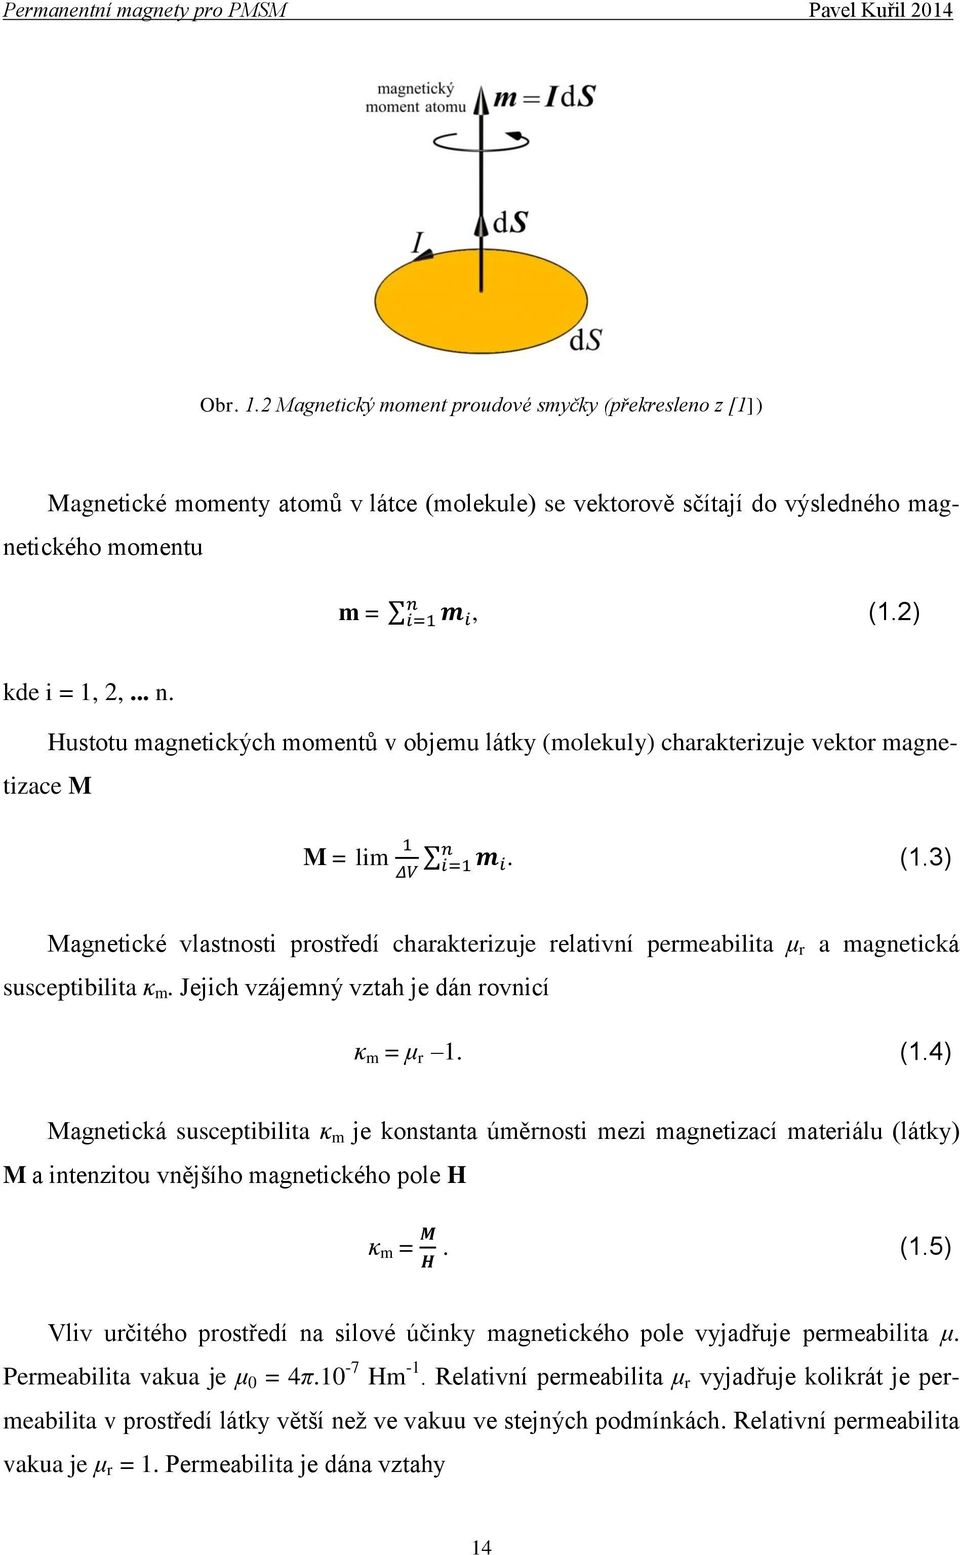 3) Magnetické vlastnosti prostředí charakterizuje relativní permeabilita μ r a magnetická susceptibilita κ m. Jejich vzájemný vztah je dán rovnicí κ m = μ r 1. (1.